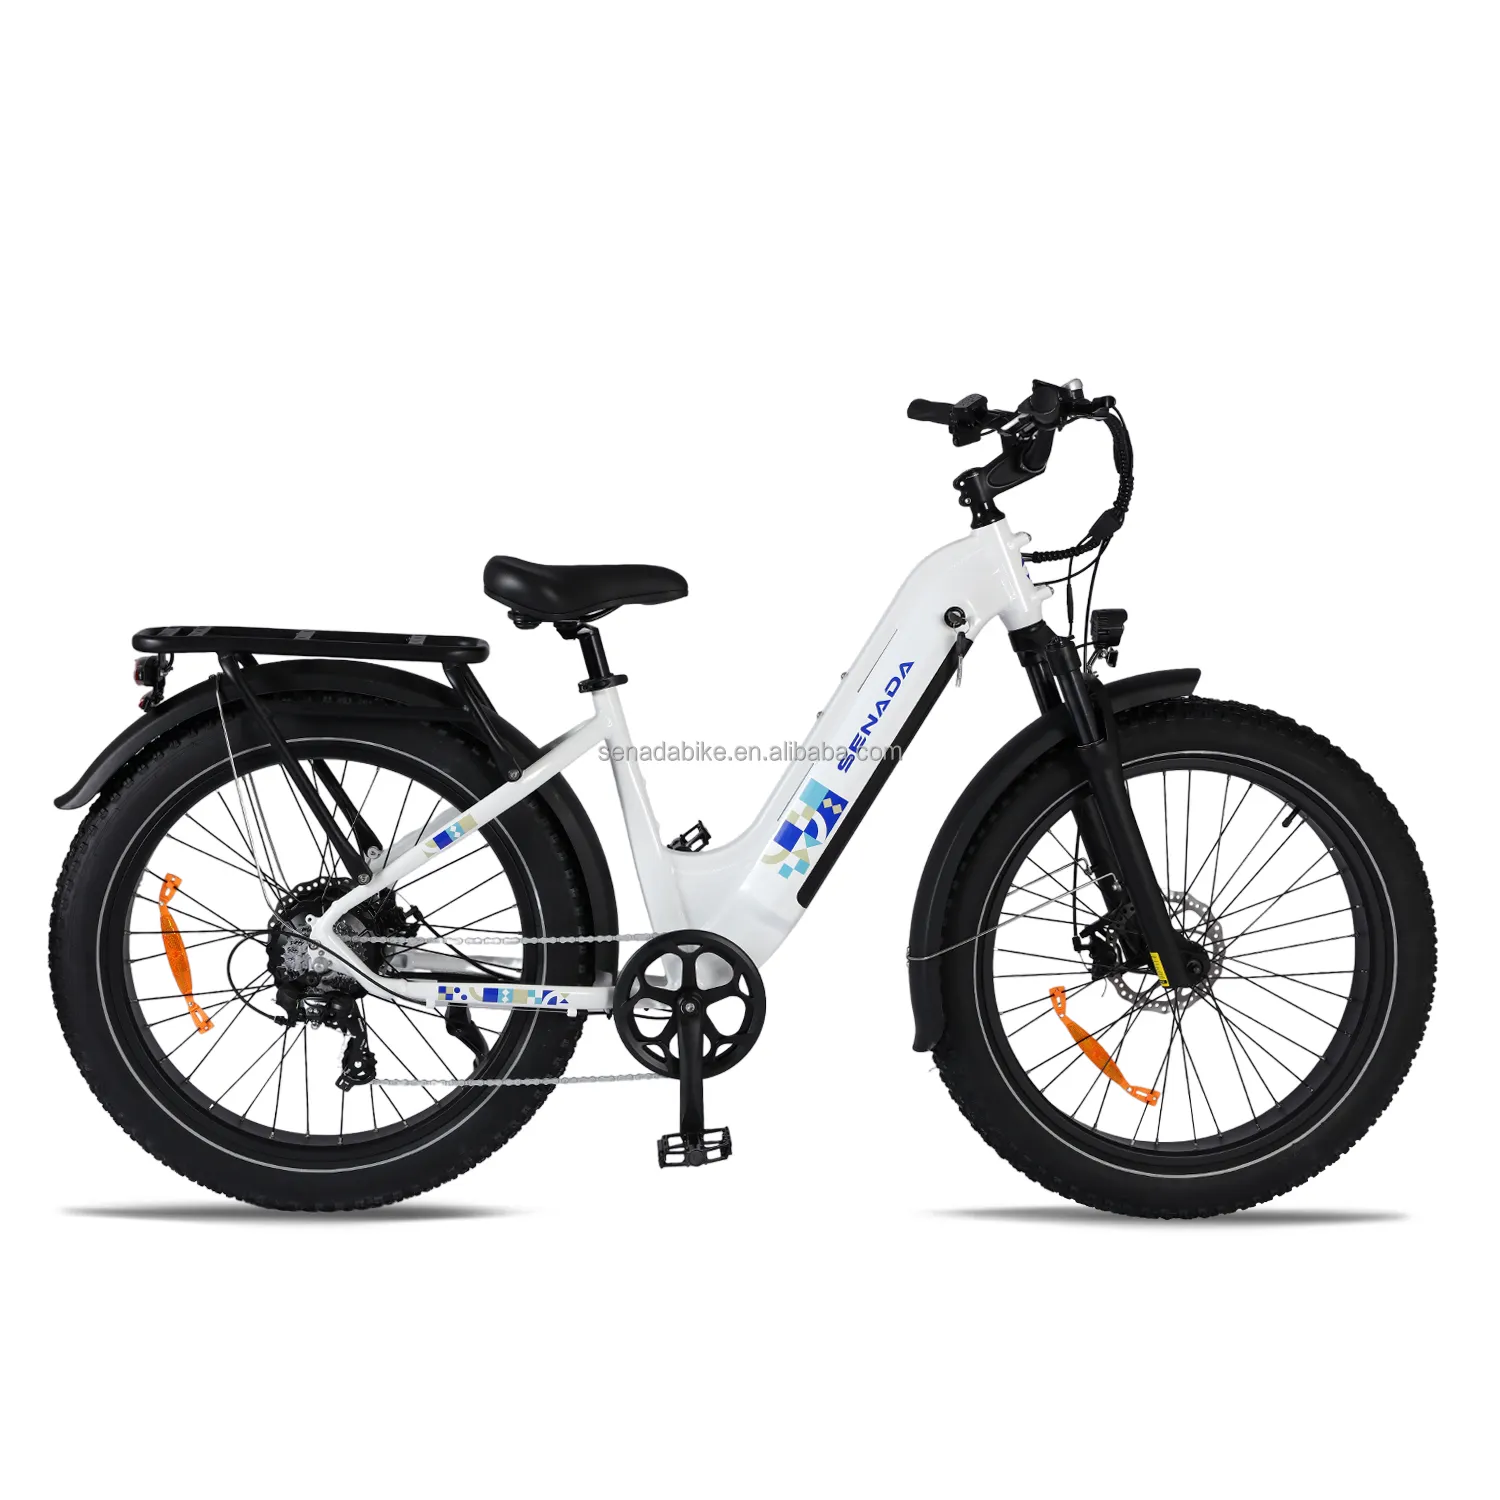 אופני מטען סנדה אופני הרים חשמליים אופני הרים צמיג שמן 750W עיר 20Ah E מחזור Rts סופר מקס שלג ליתיום ארה""ב סוחר אופניים חשמליים